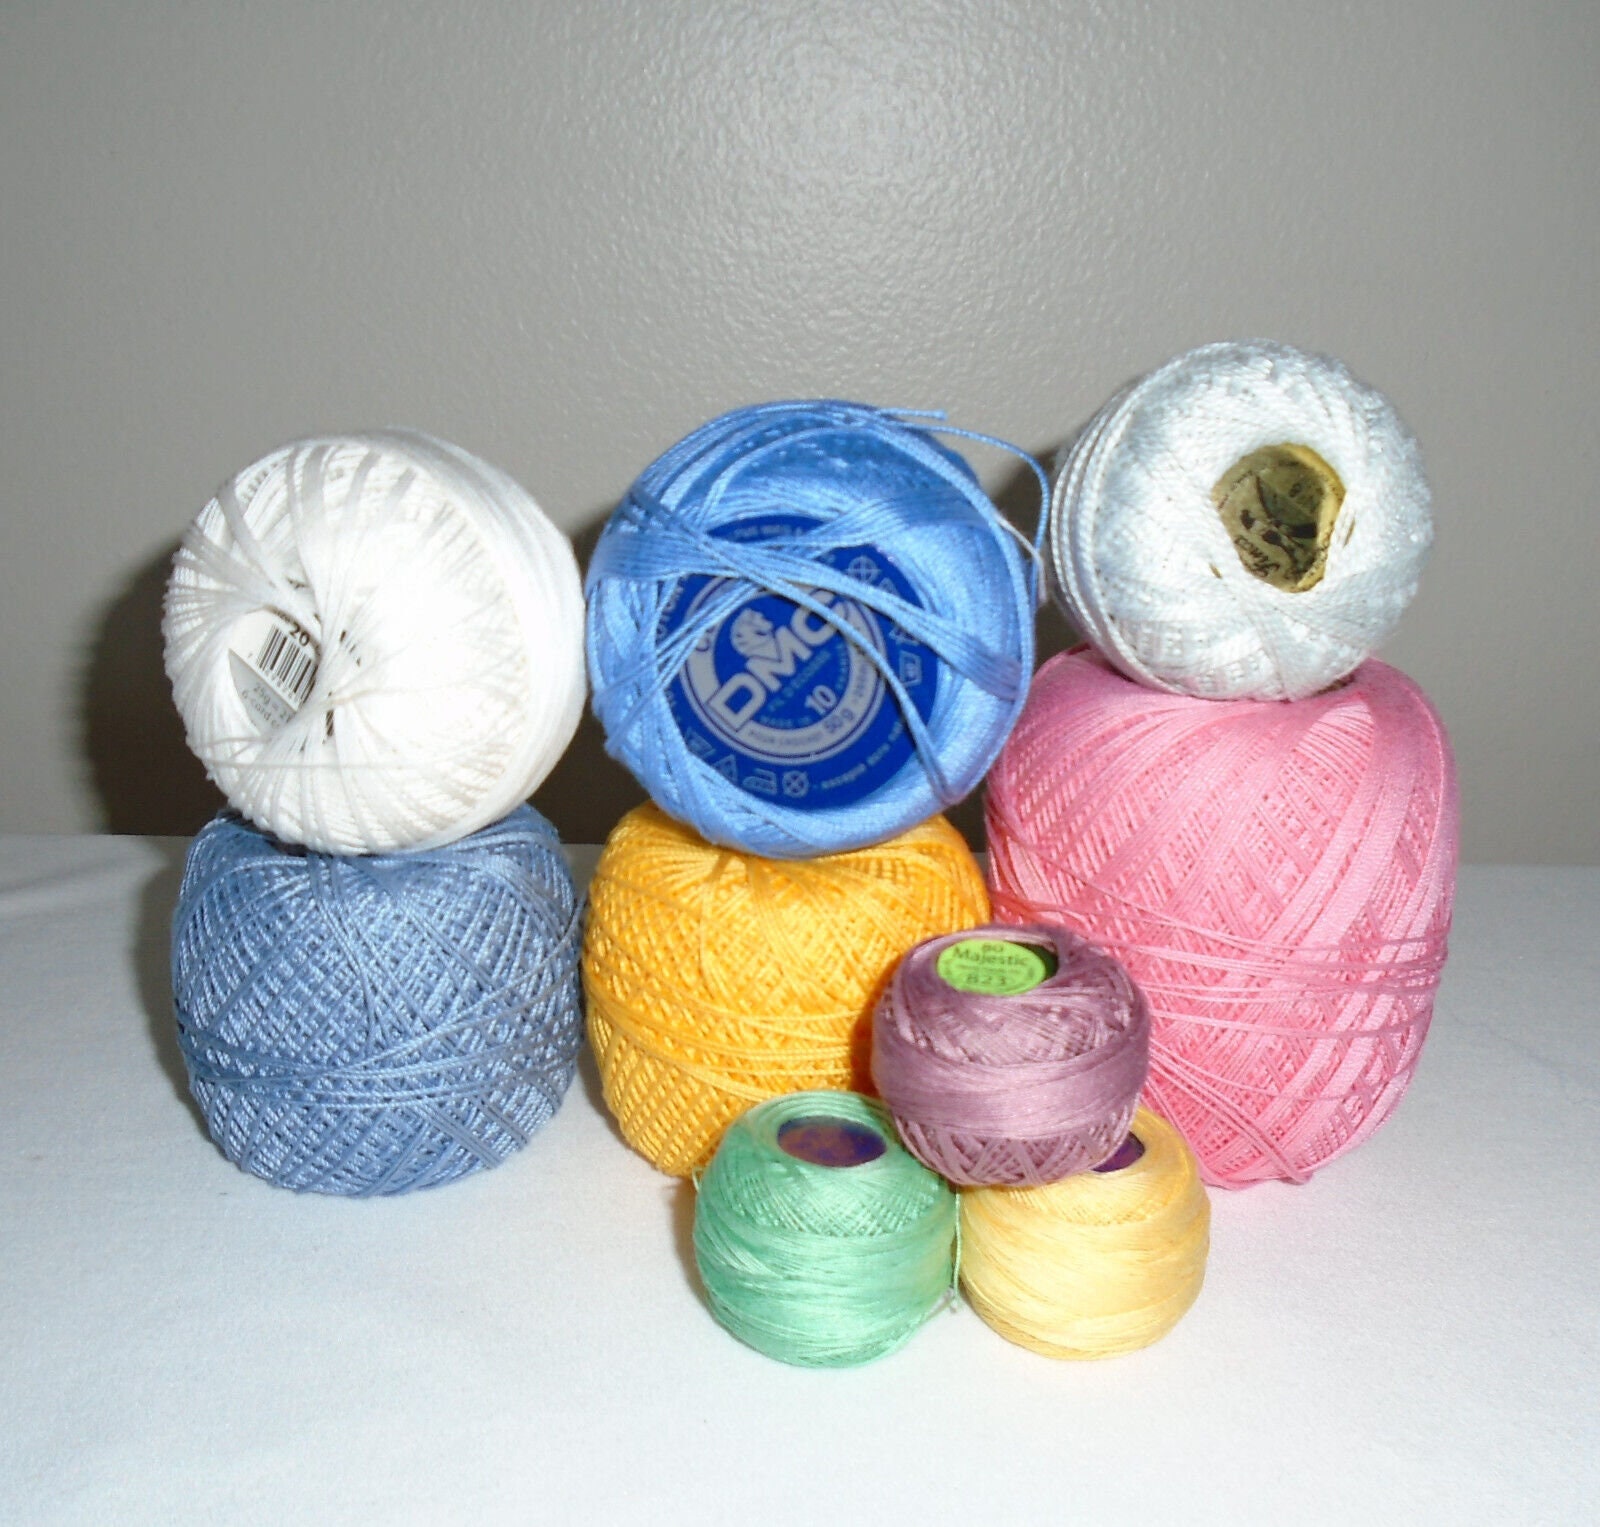 Lizbeth DMC Crochet Cotton size 10, Snow White, Sova Enterprises